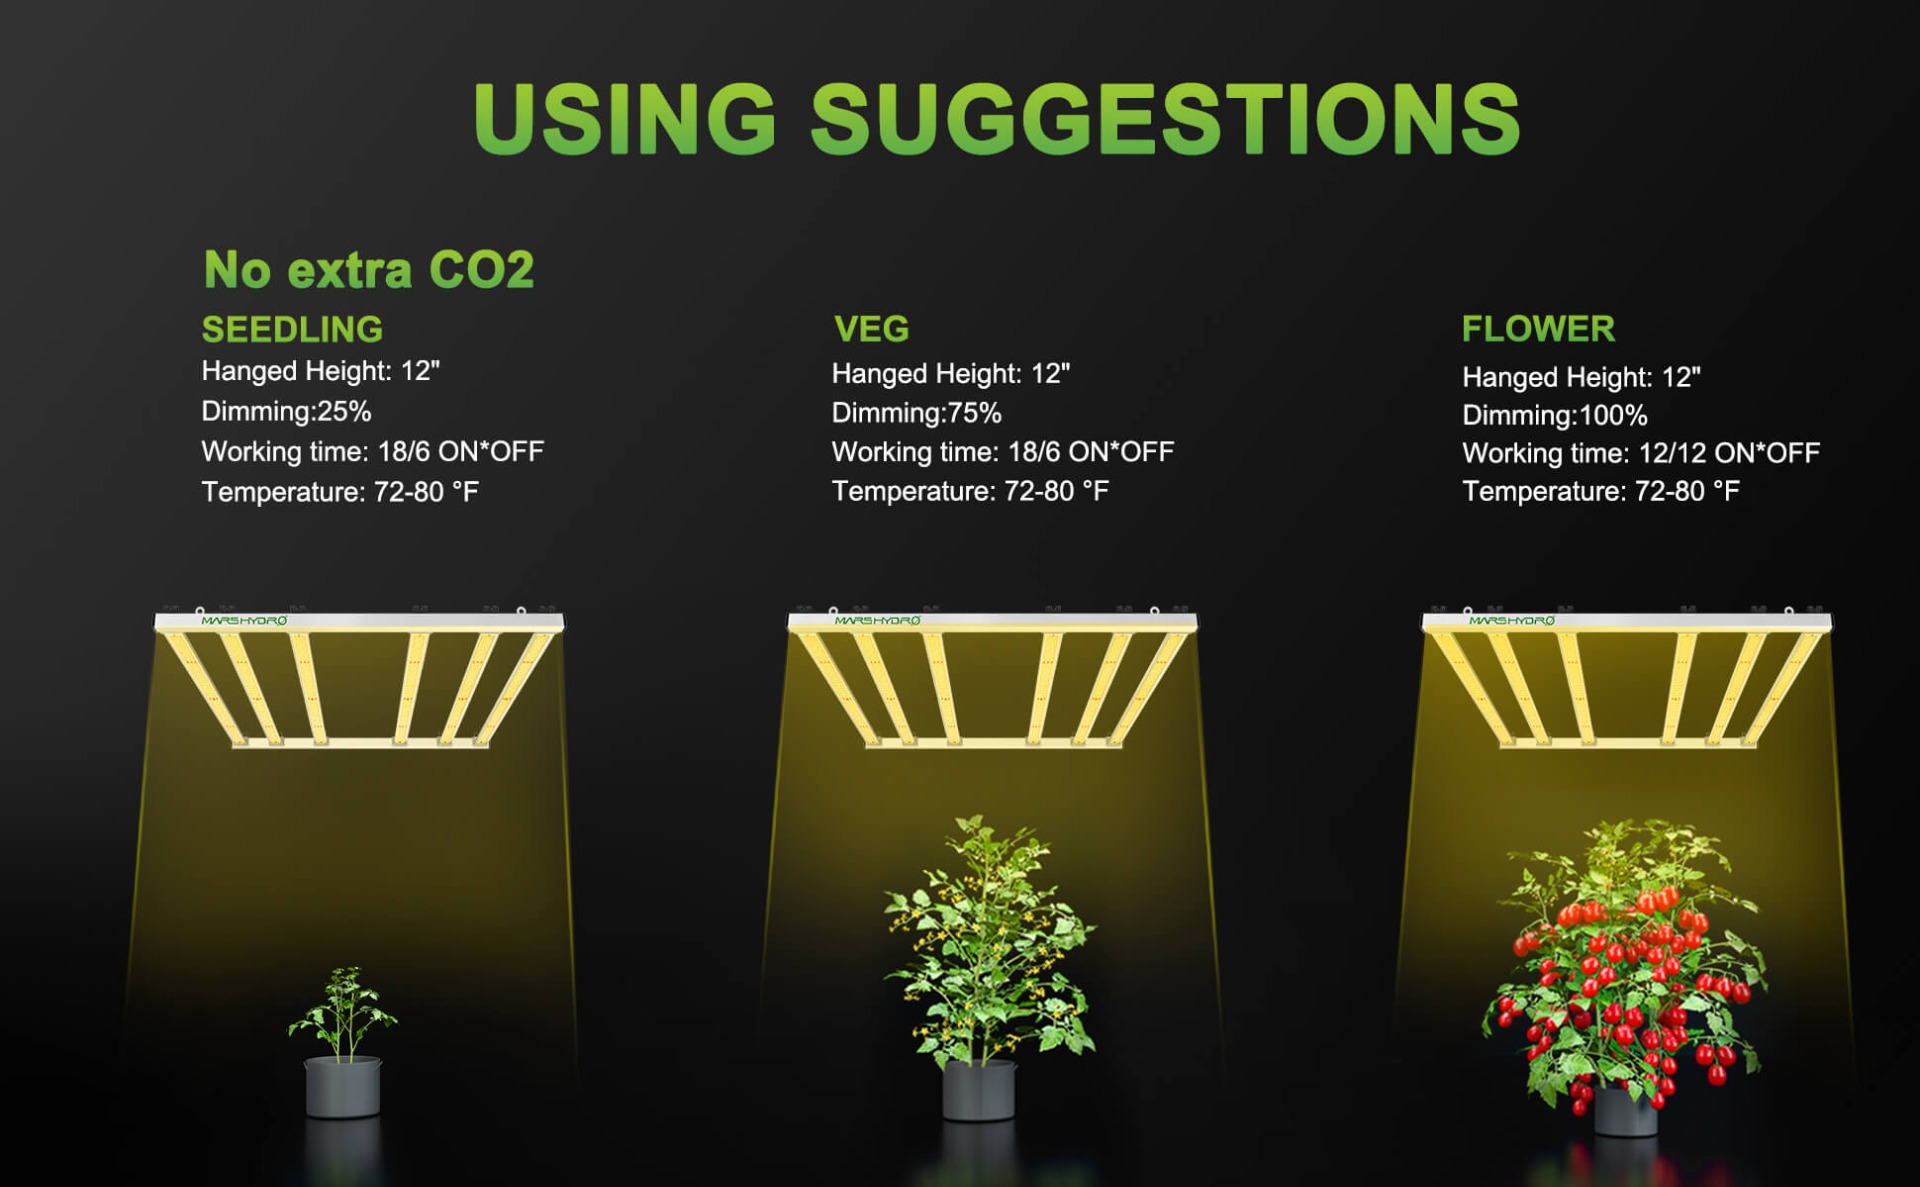 Светодиодный светильник Mars Hydro FC-E4800 для выращивания растений без CO2